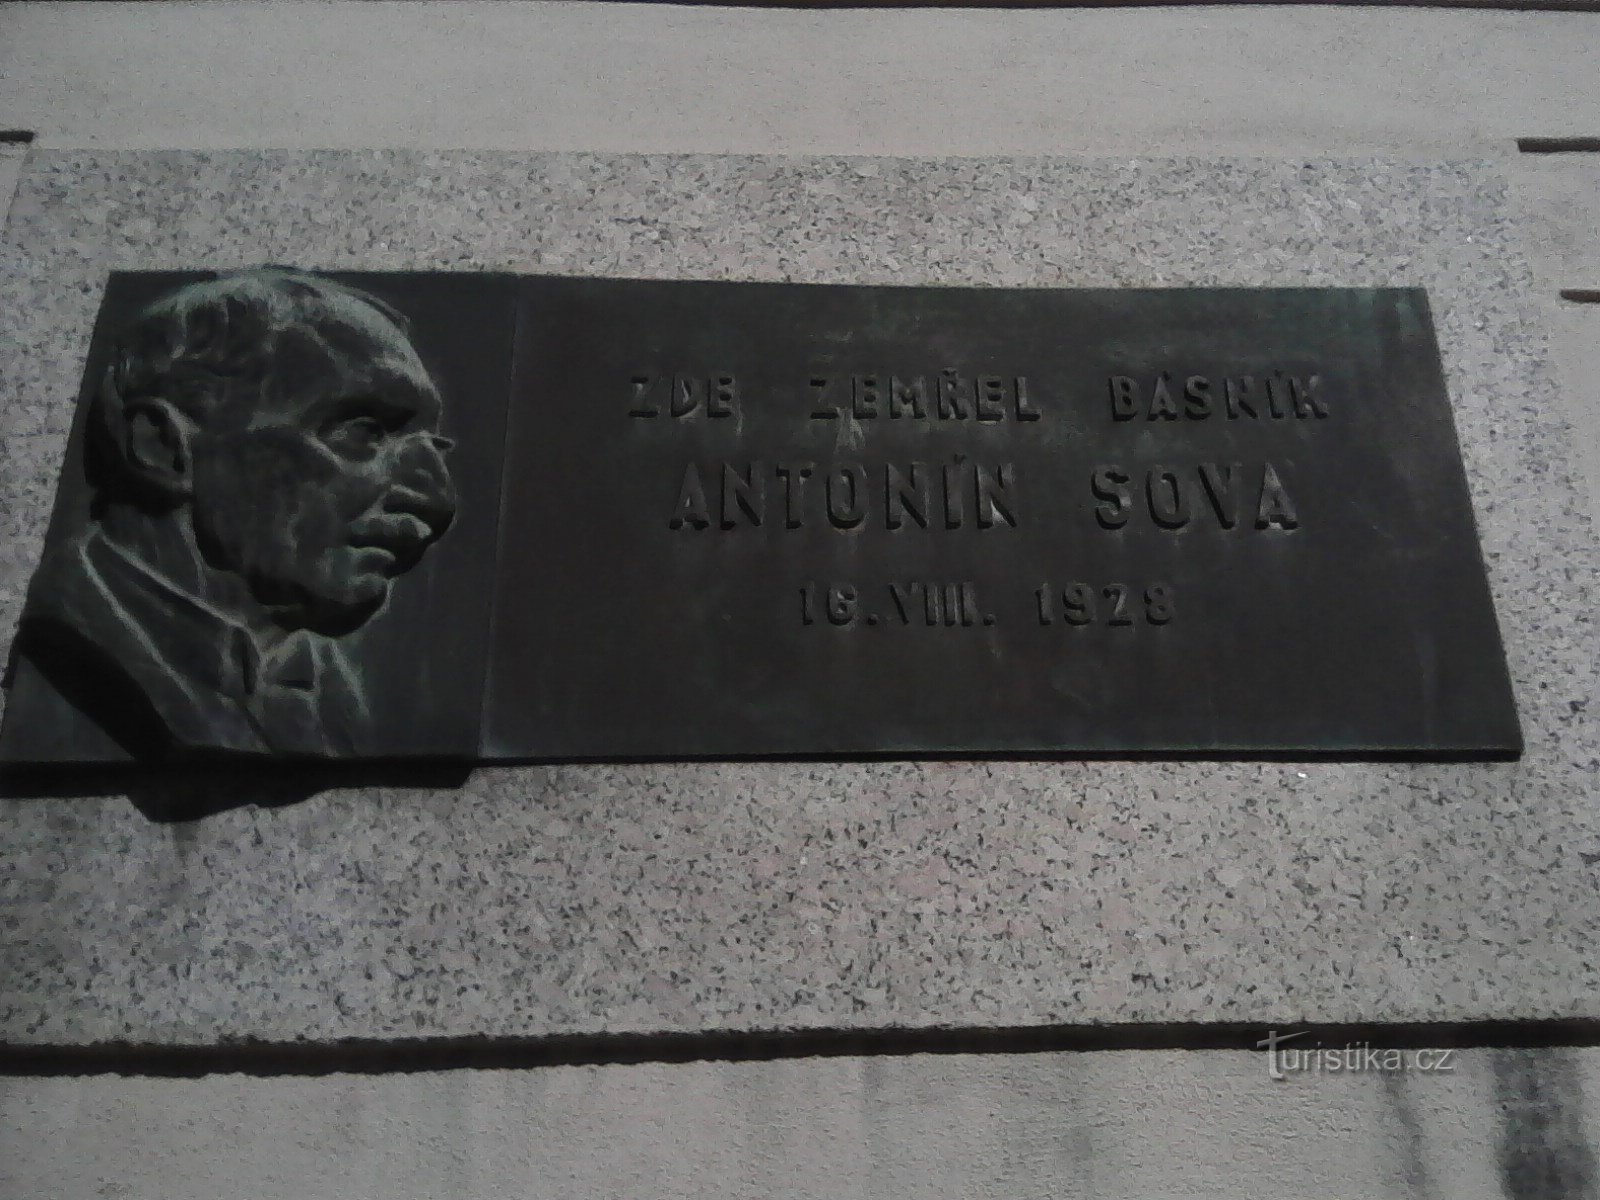 1. パコフ出身の著名人、アントニン・ソバの記念プレートが同じ名前の通りにあります。